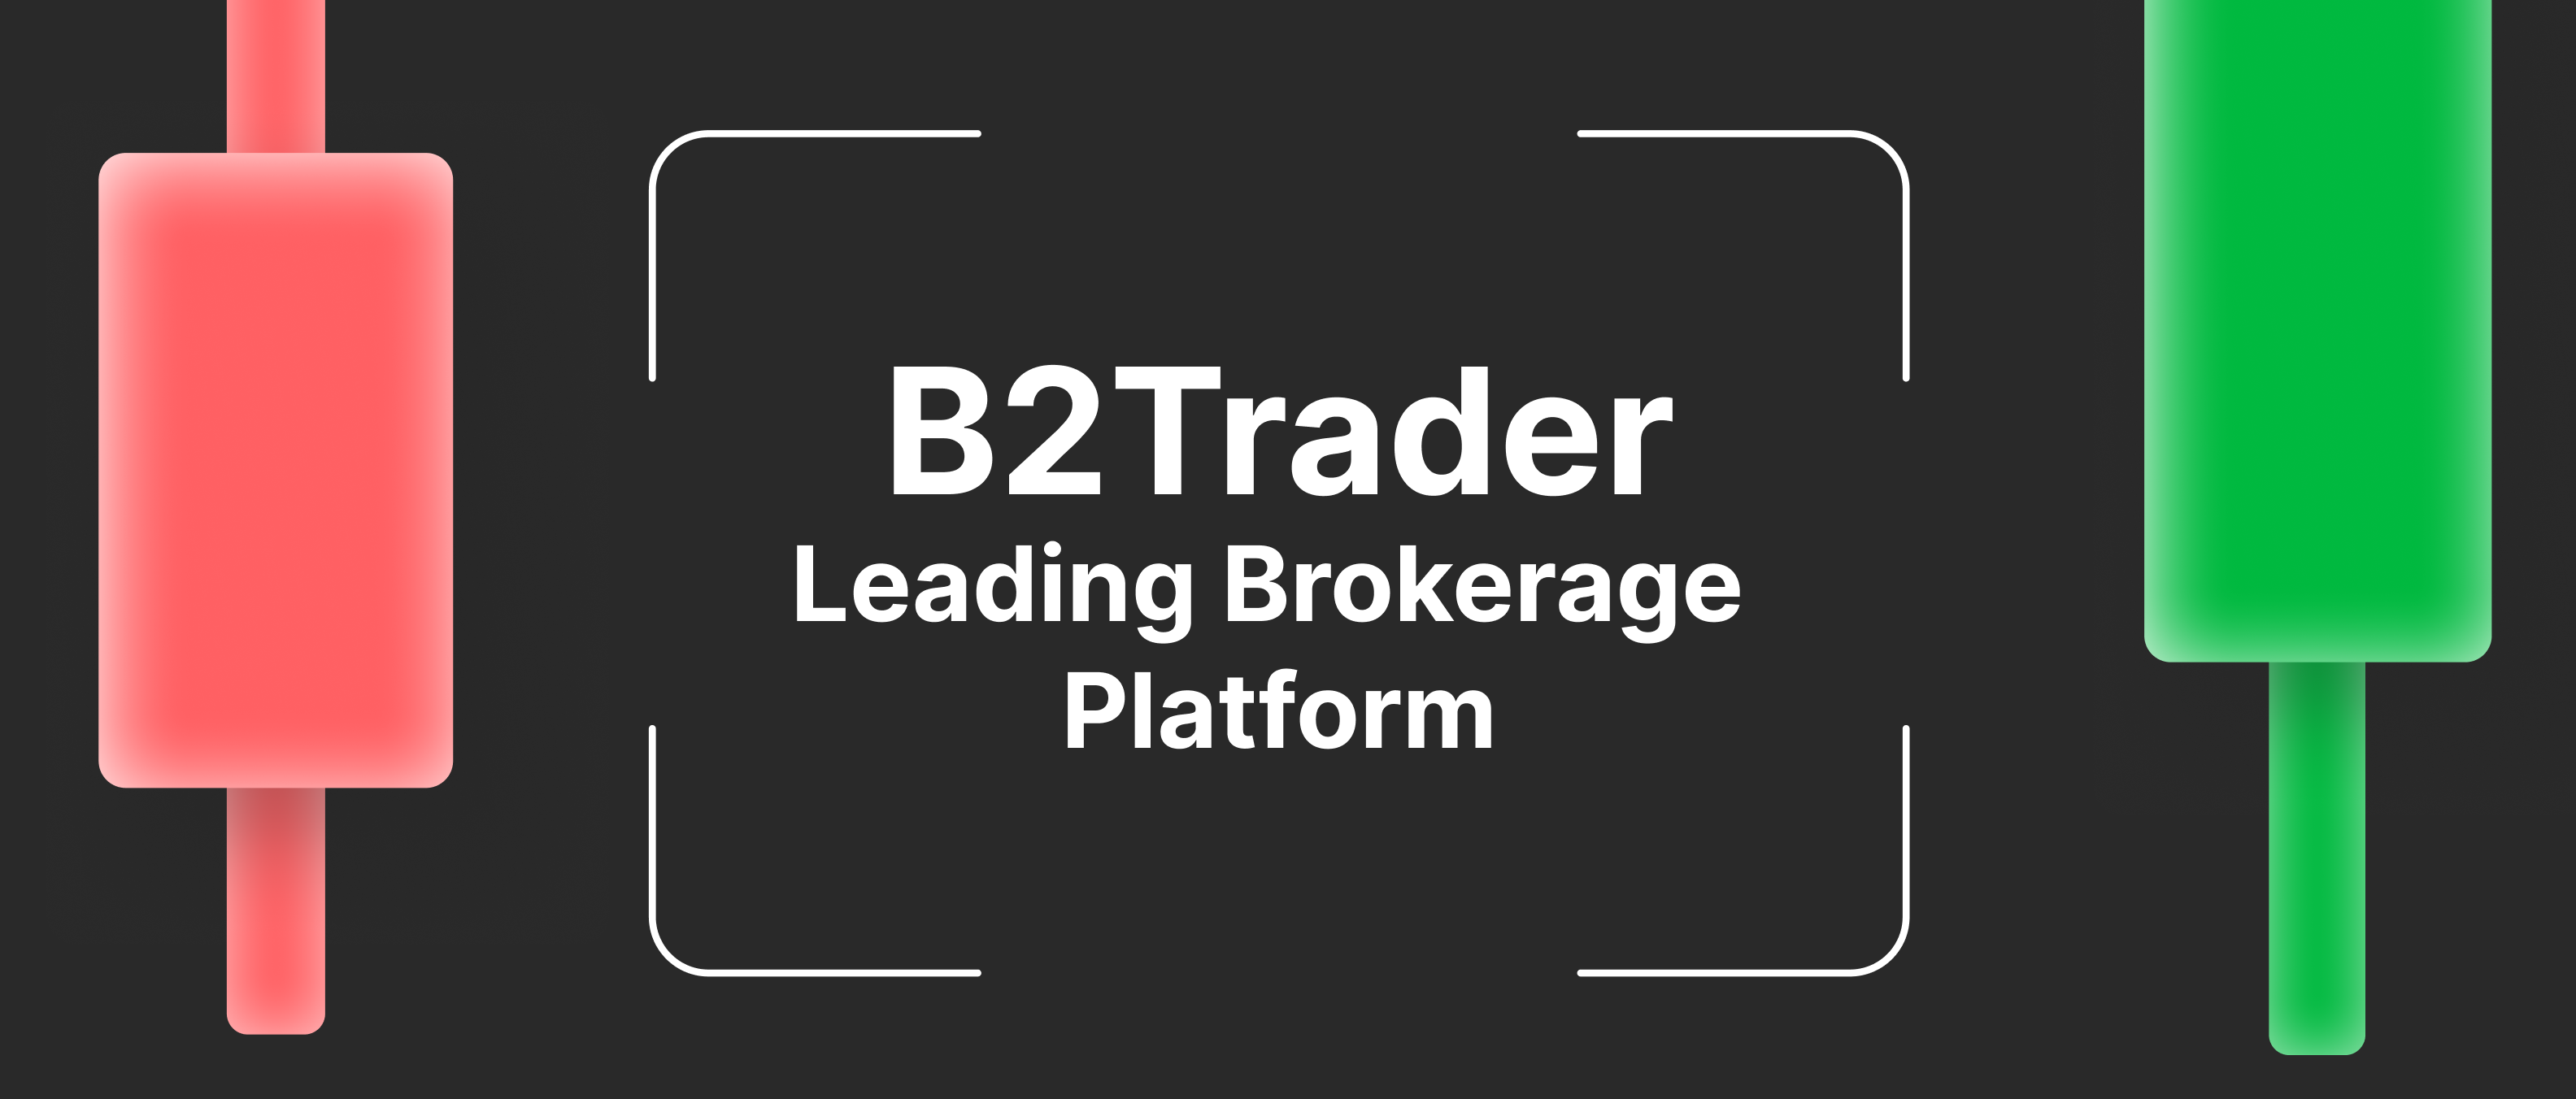 通过B2Trader扩展您的业务产品——终极加密货币现货经纪解决方案